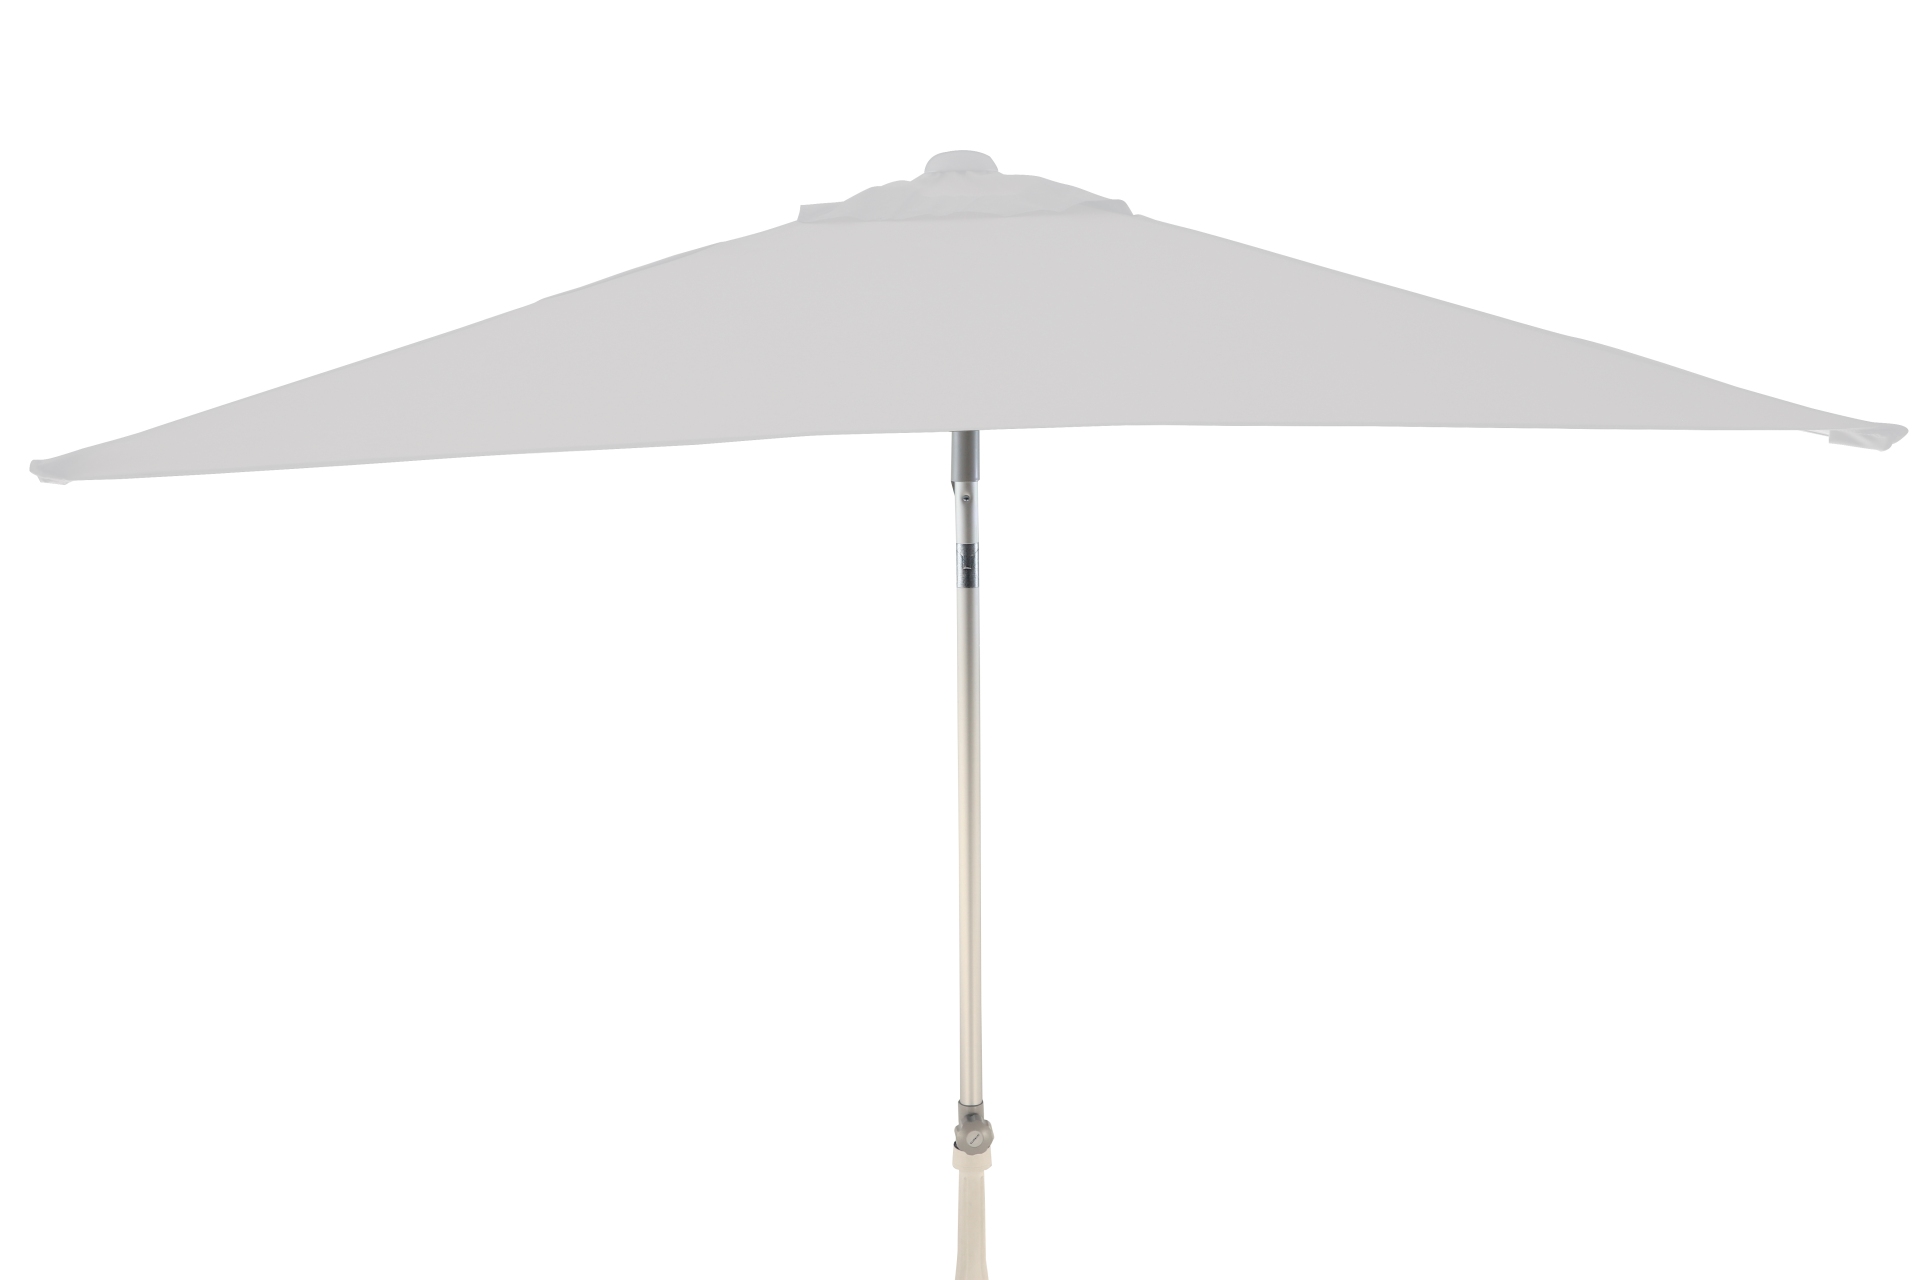 Der Sonnenschirm Elba überzeugt mit seinem modernen Design. Die Form des Schirms ist Eckig und hat eine Größe von 200 cm. Designet wurde er von der Marke Jan Kurtz und hat die Farbe Weiß.